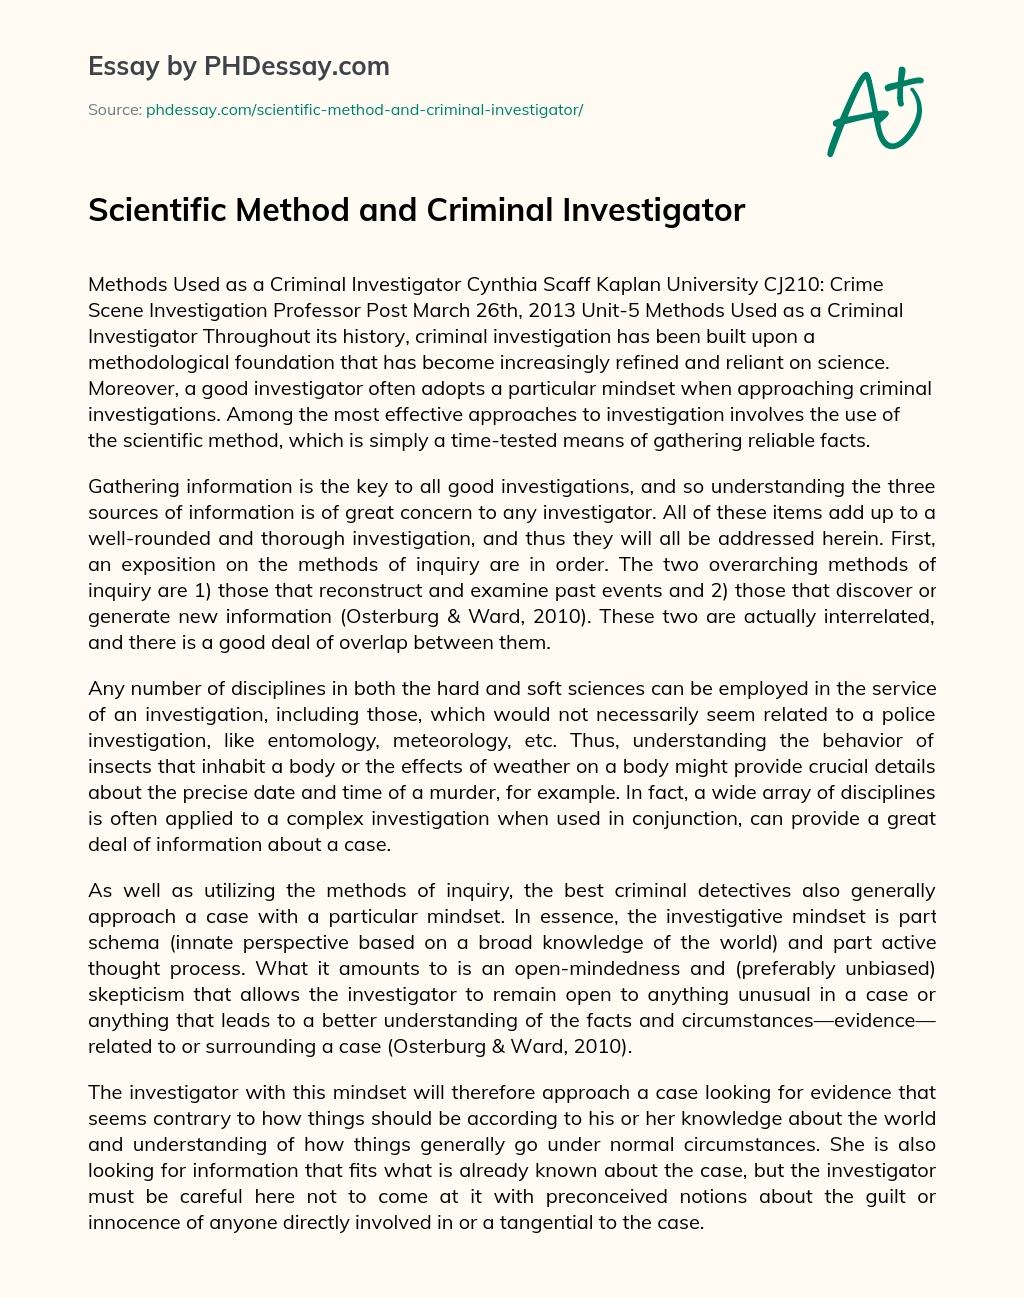 Scientific Method and Criminal Investigator essay